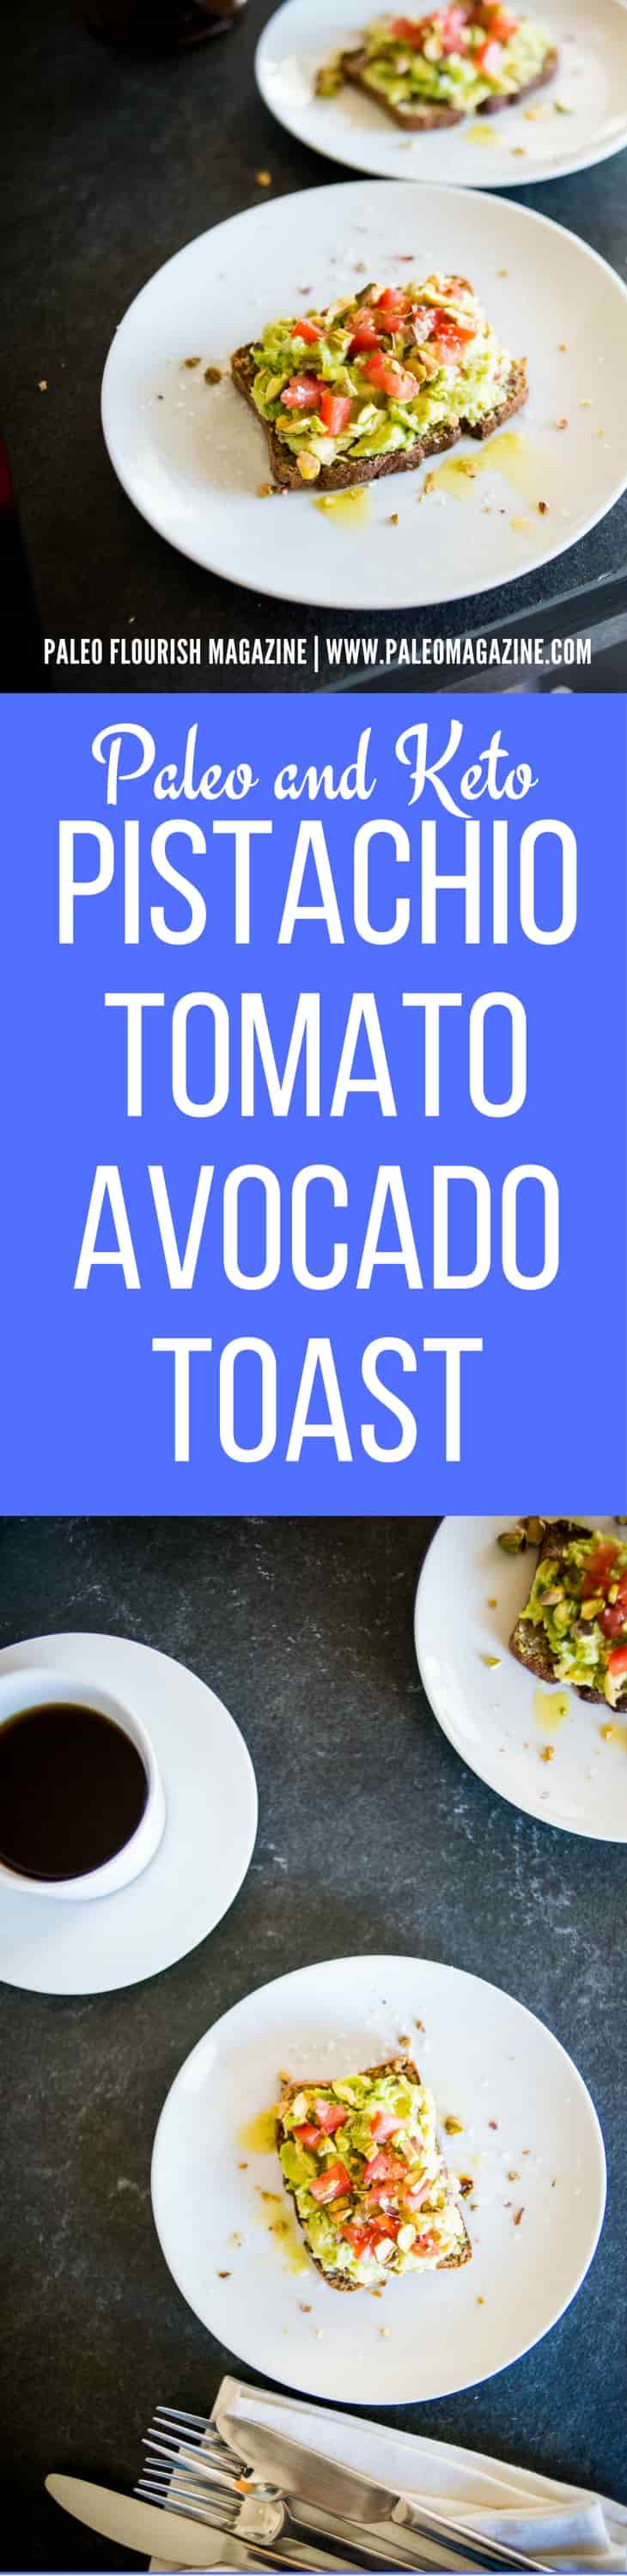 Keto Pistachio Tomato Avocado Toast Recipe [Paleo, Dairy-Free] #paleo #keto #recipes https://ketosummit.com/keto-avocado-toast-recipe-paleo